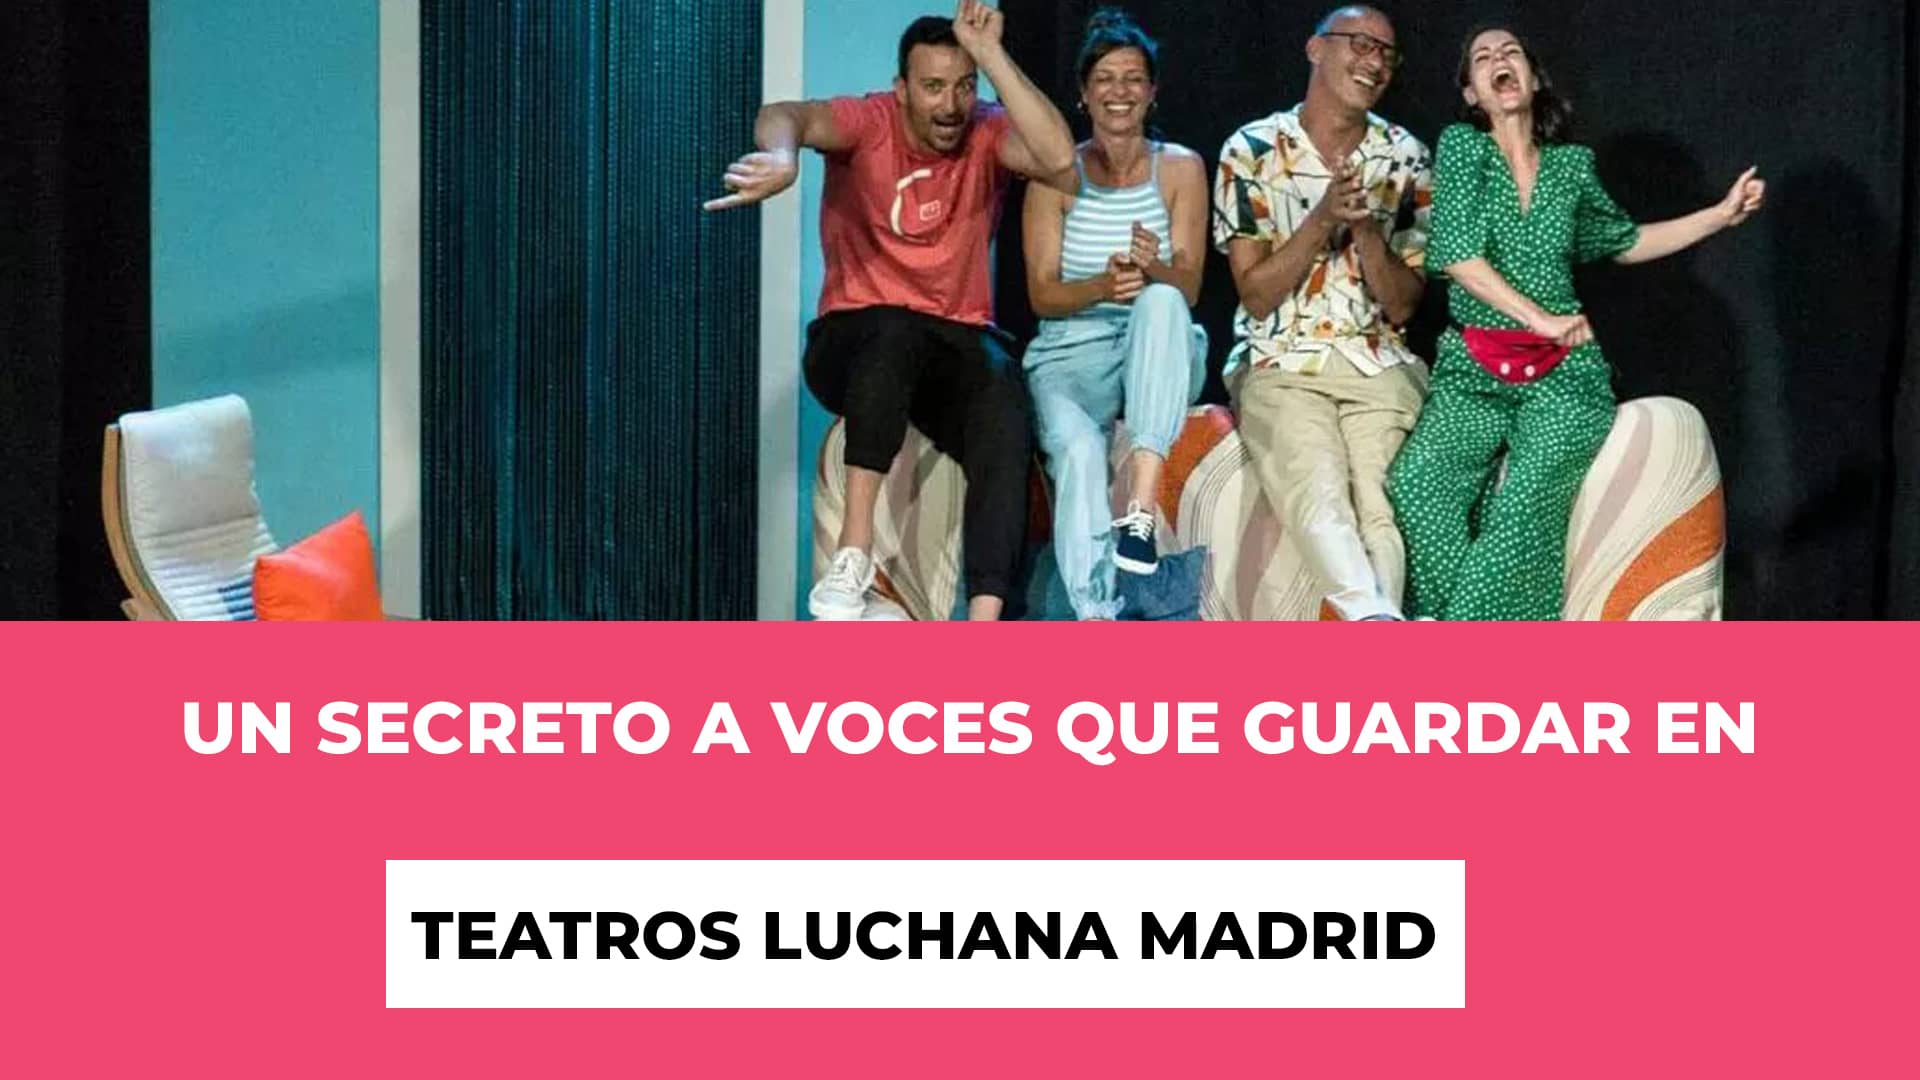 Un Secreto a Voces que guardar en Teatros Luchana Madrid - Un concepto que se repite - Fechas y lugar - Precios de las entradas